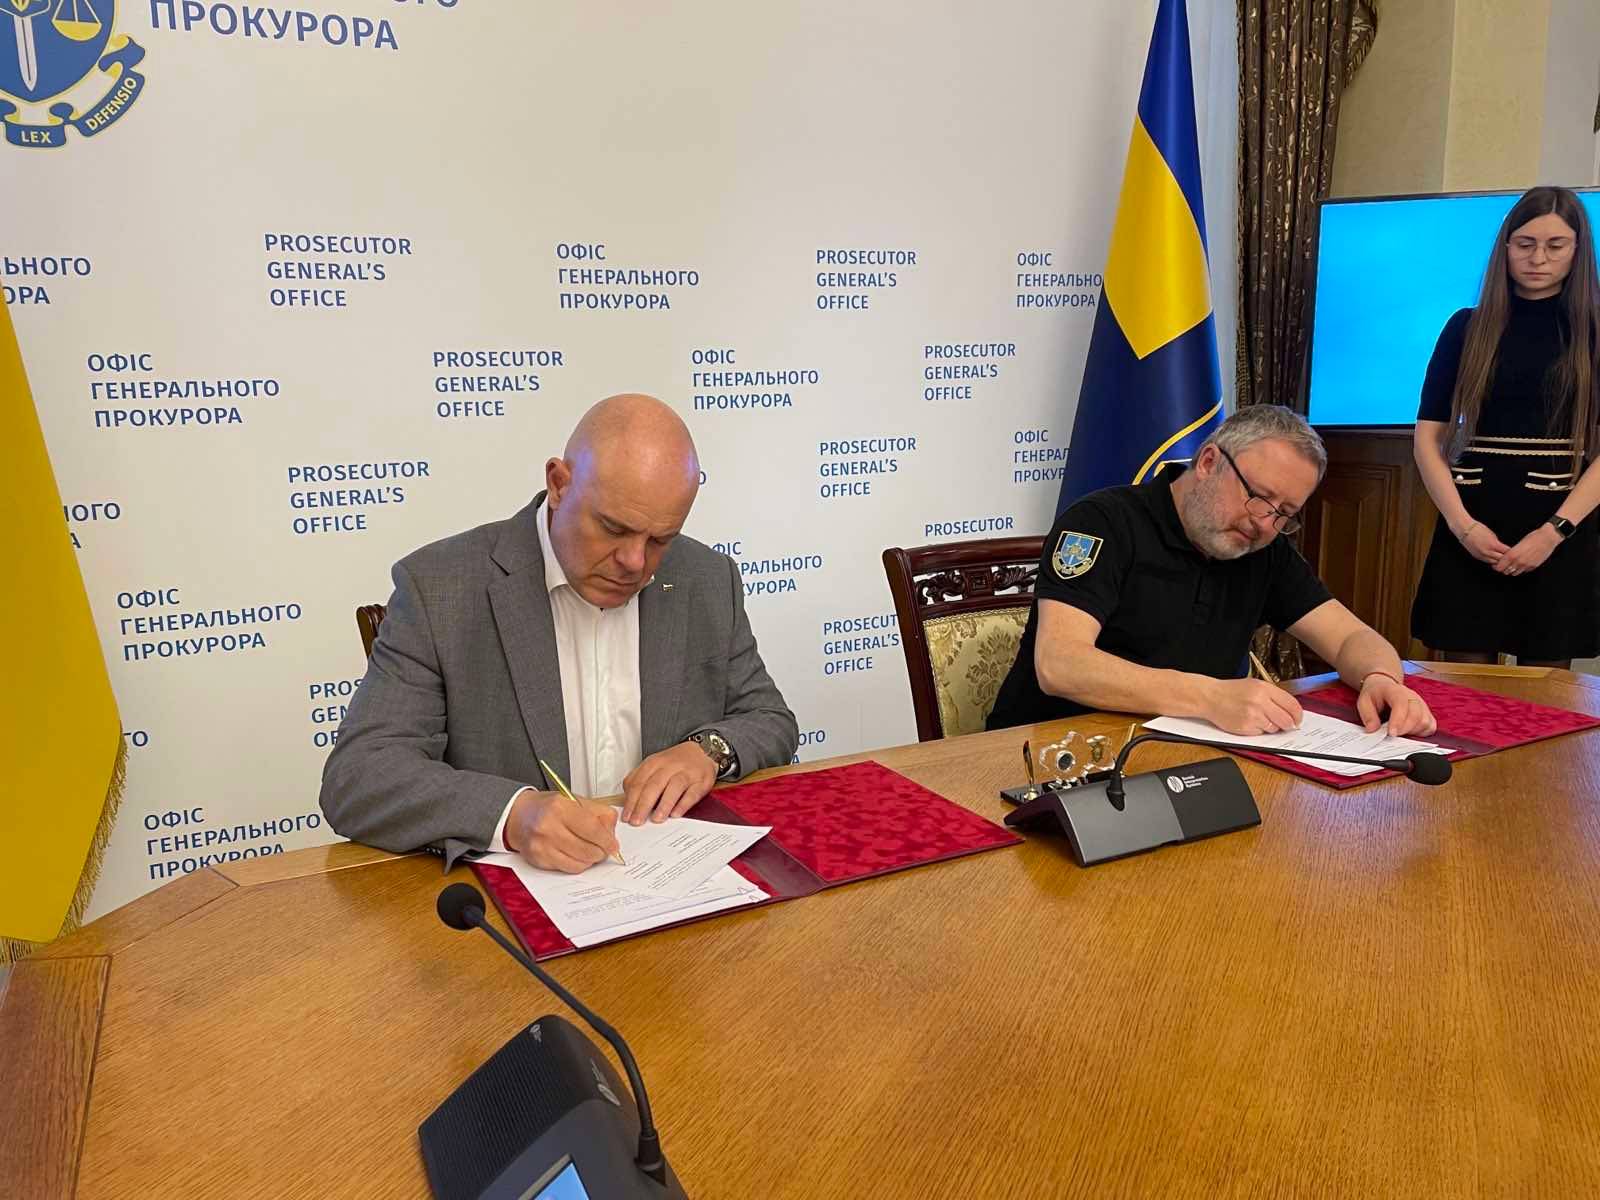 Меморандум за разбирателство и сътрудничество между Прокуратурата на Република България и Генералната прокуратура на Украйна